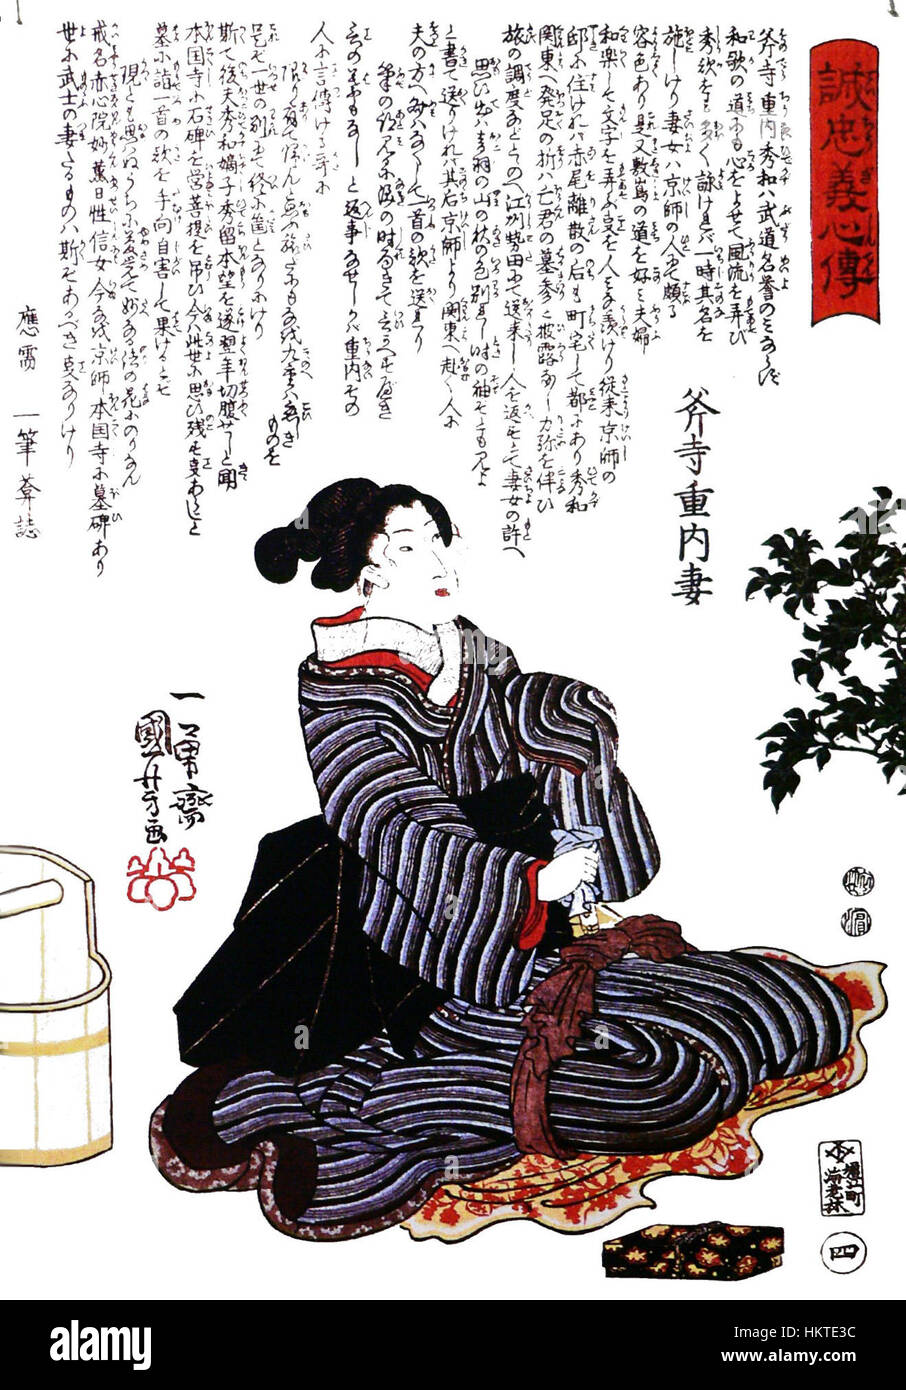 Femme-47-ronin-seppuku-p1000701 Stock Photo